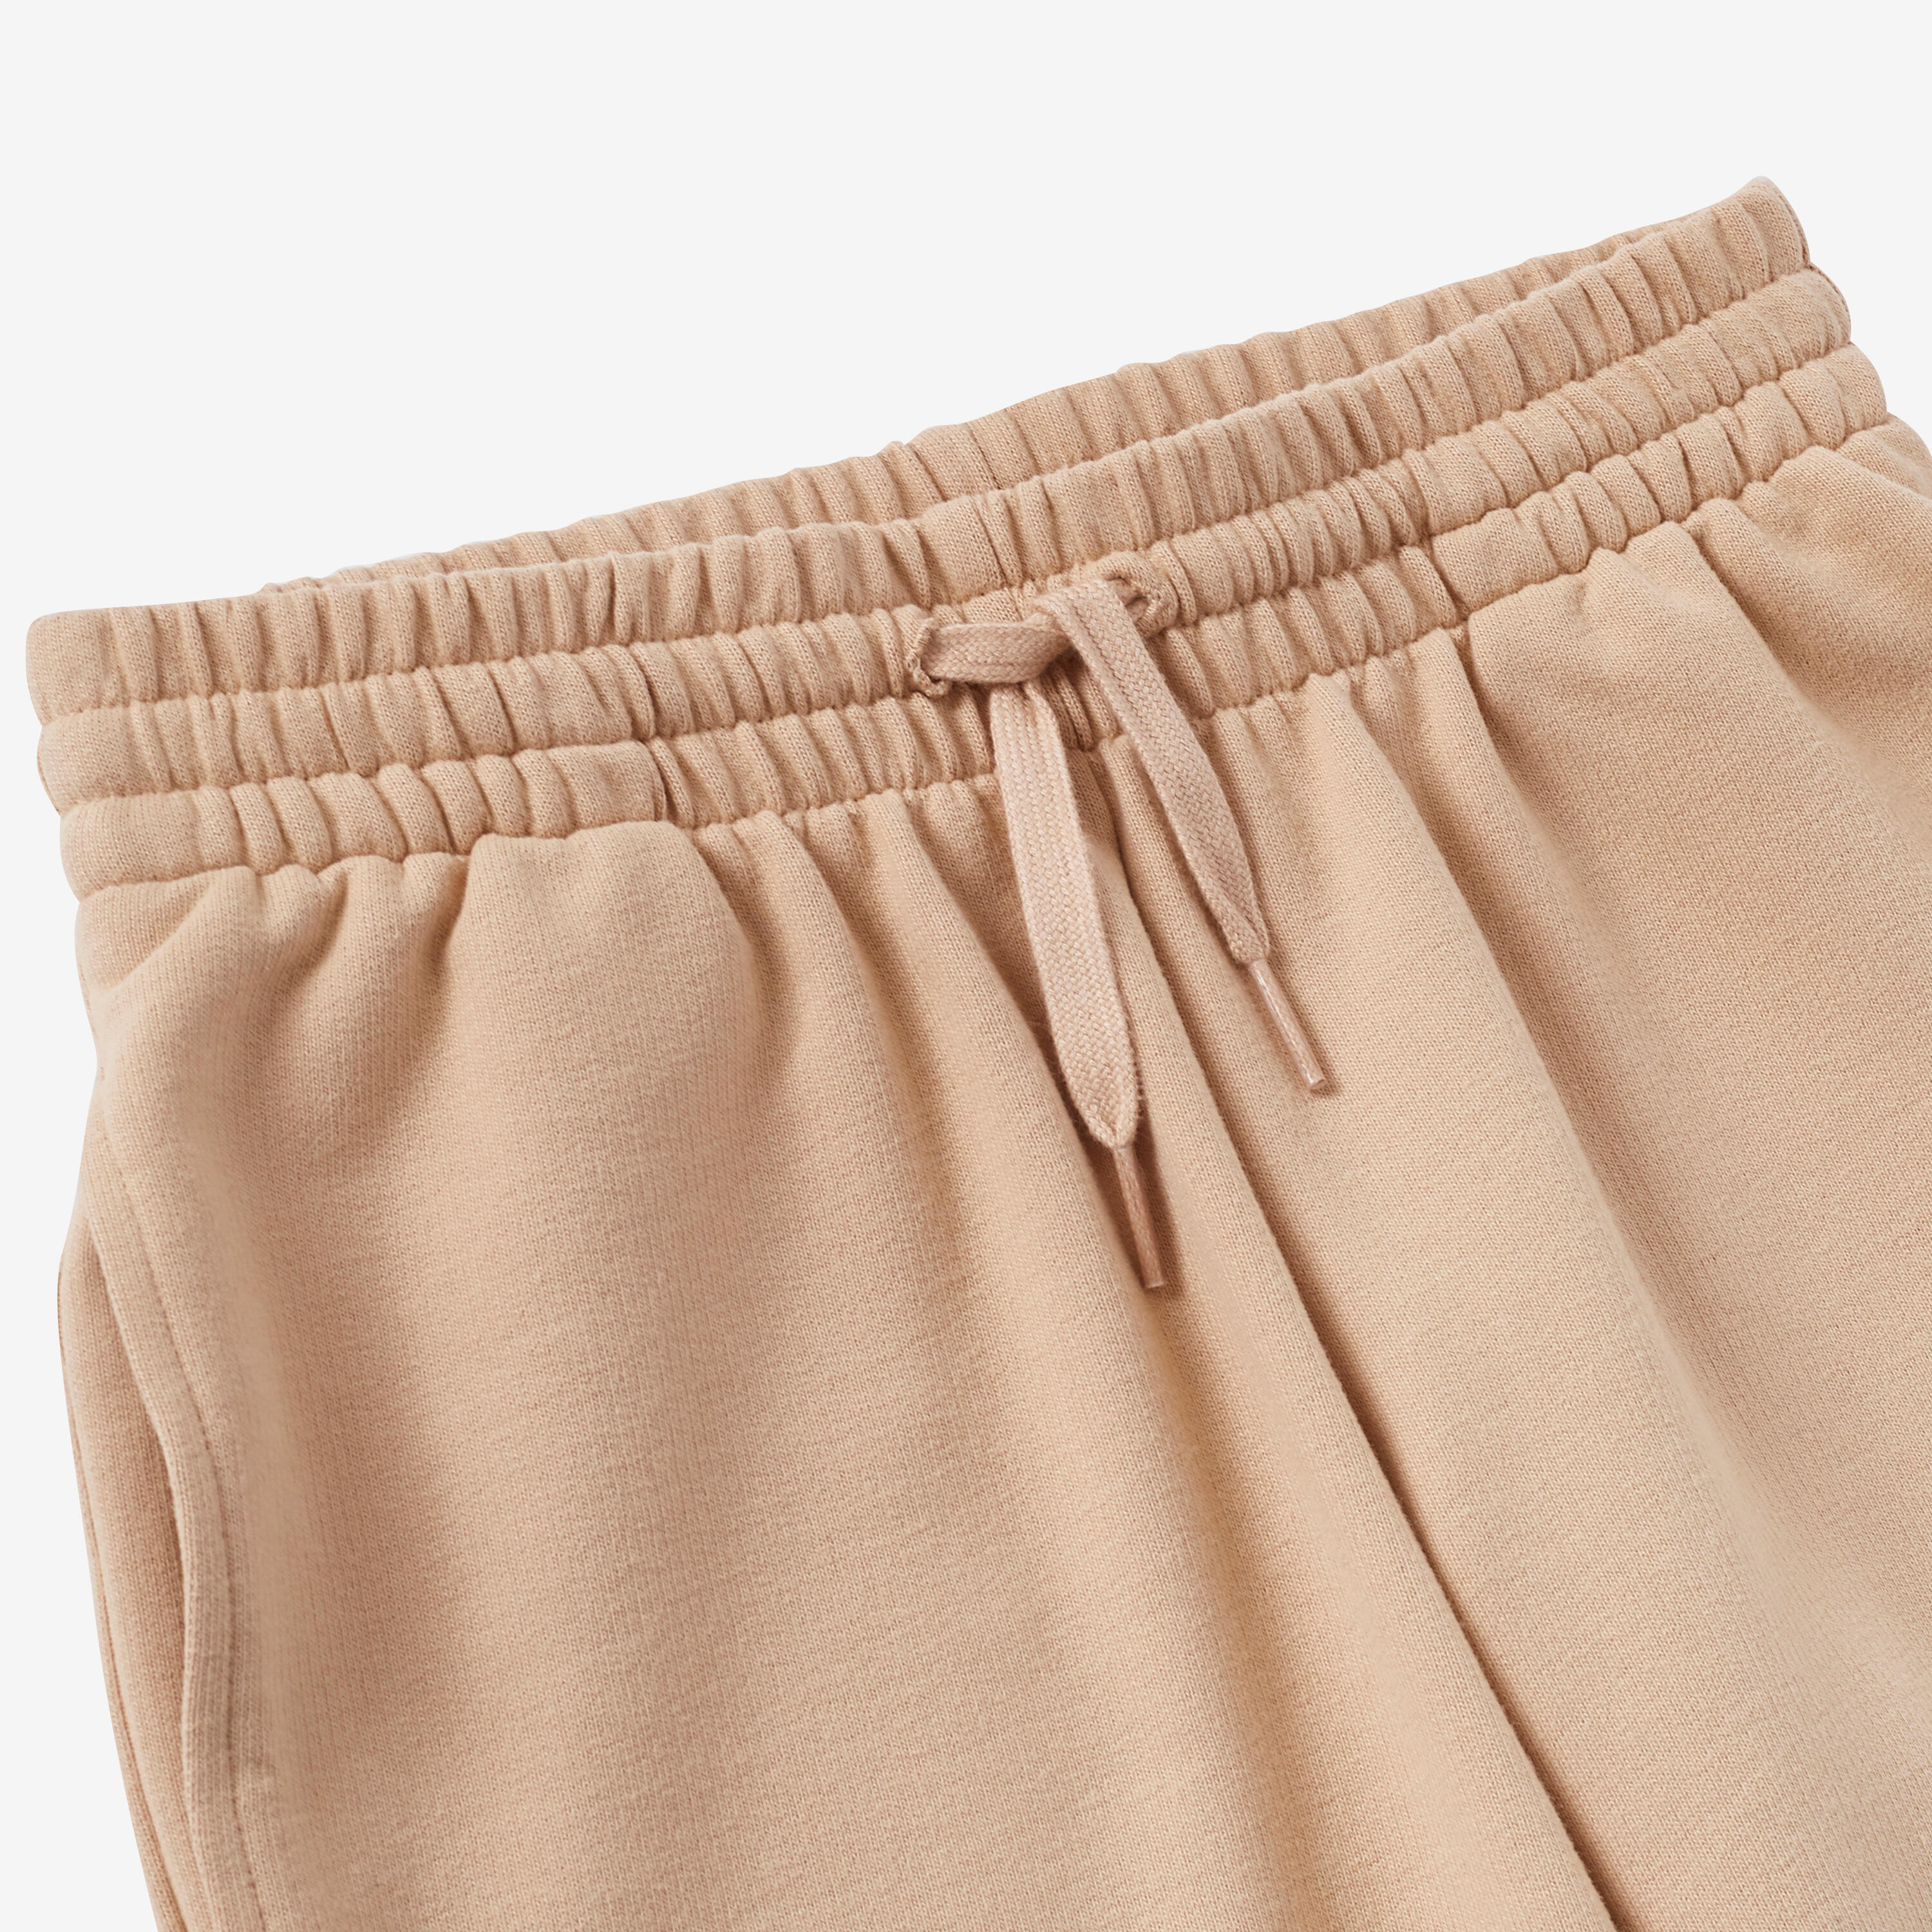 Kids' Unisex Cotton Shorts - Beige 4/6